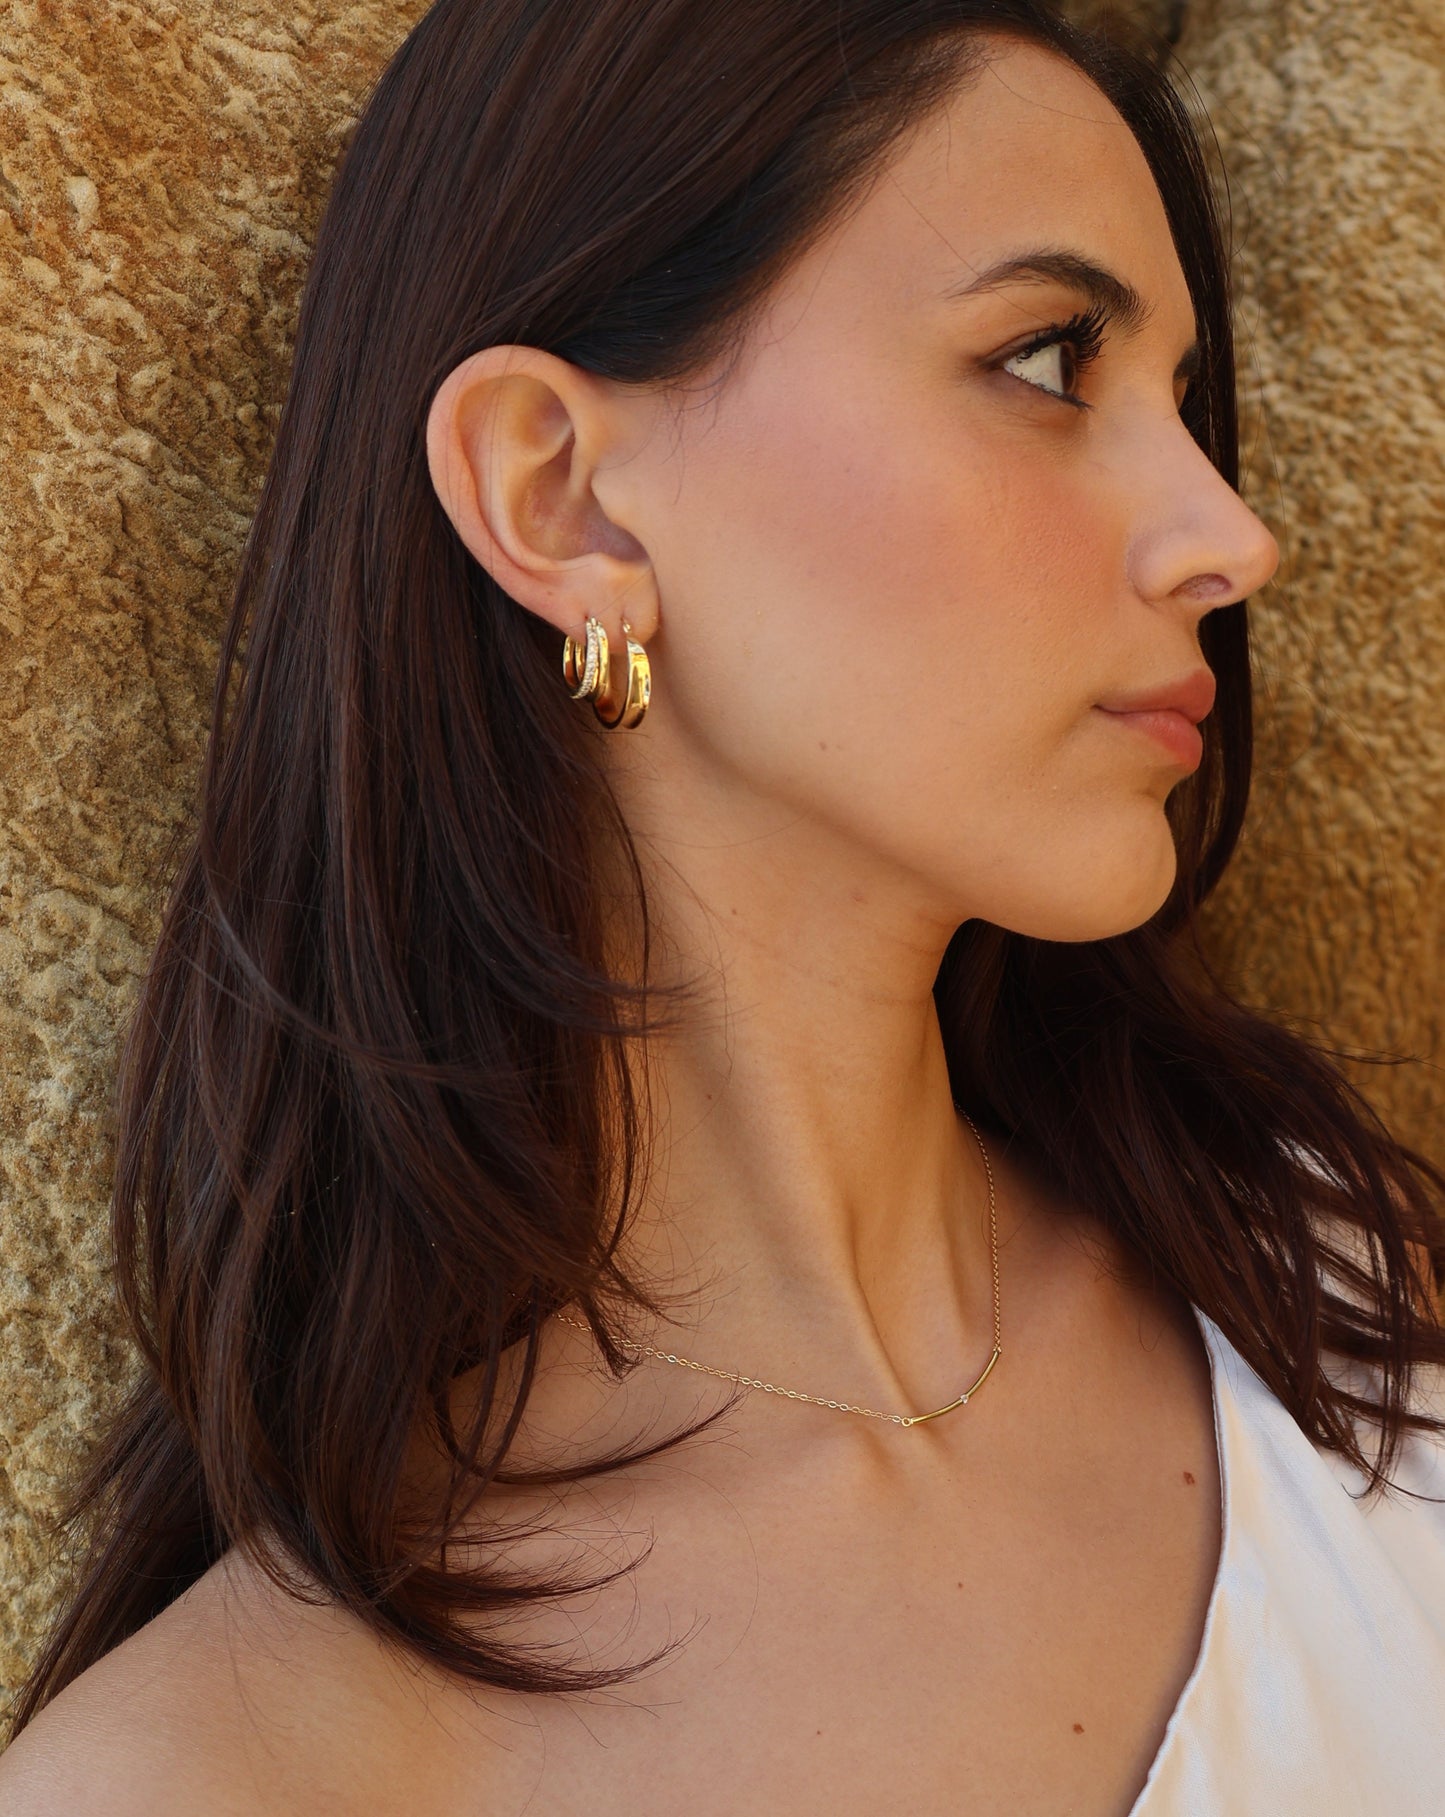 Monaco earrings - gold